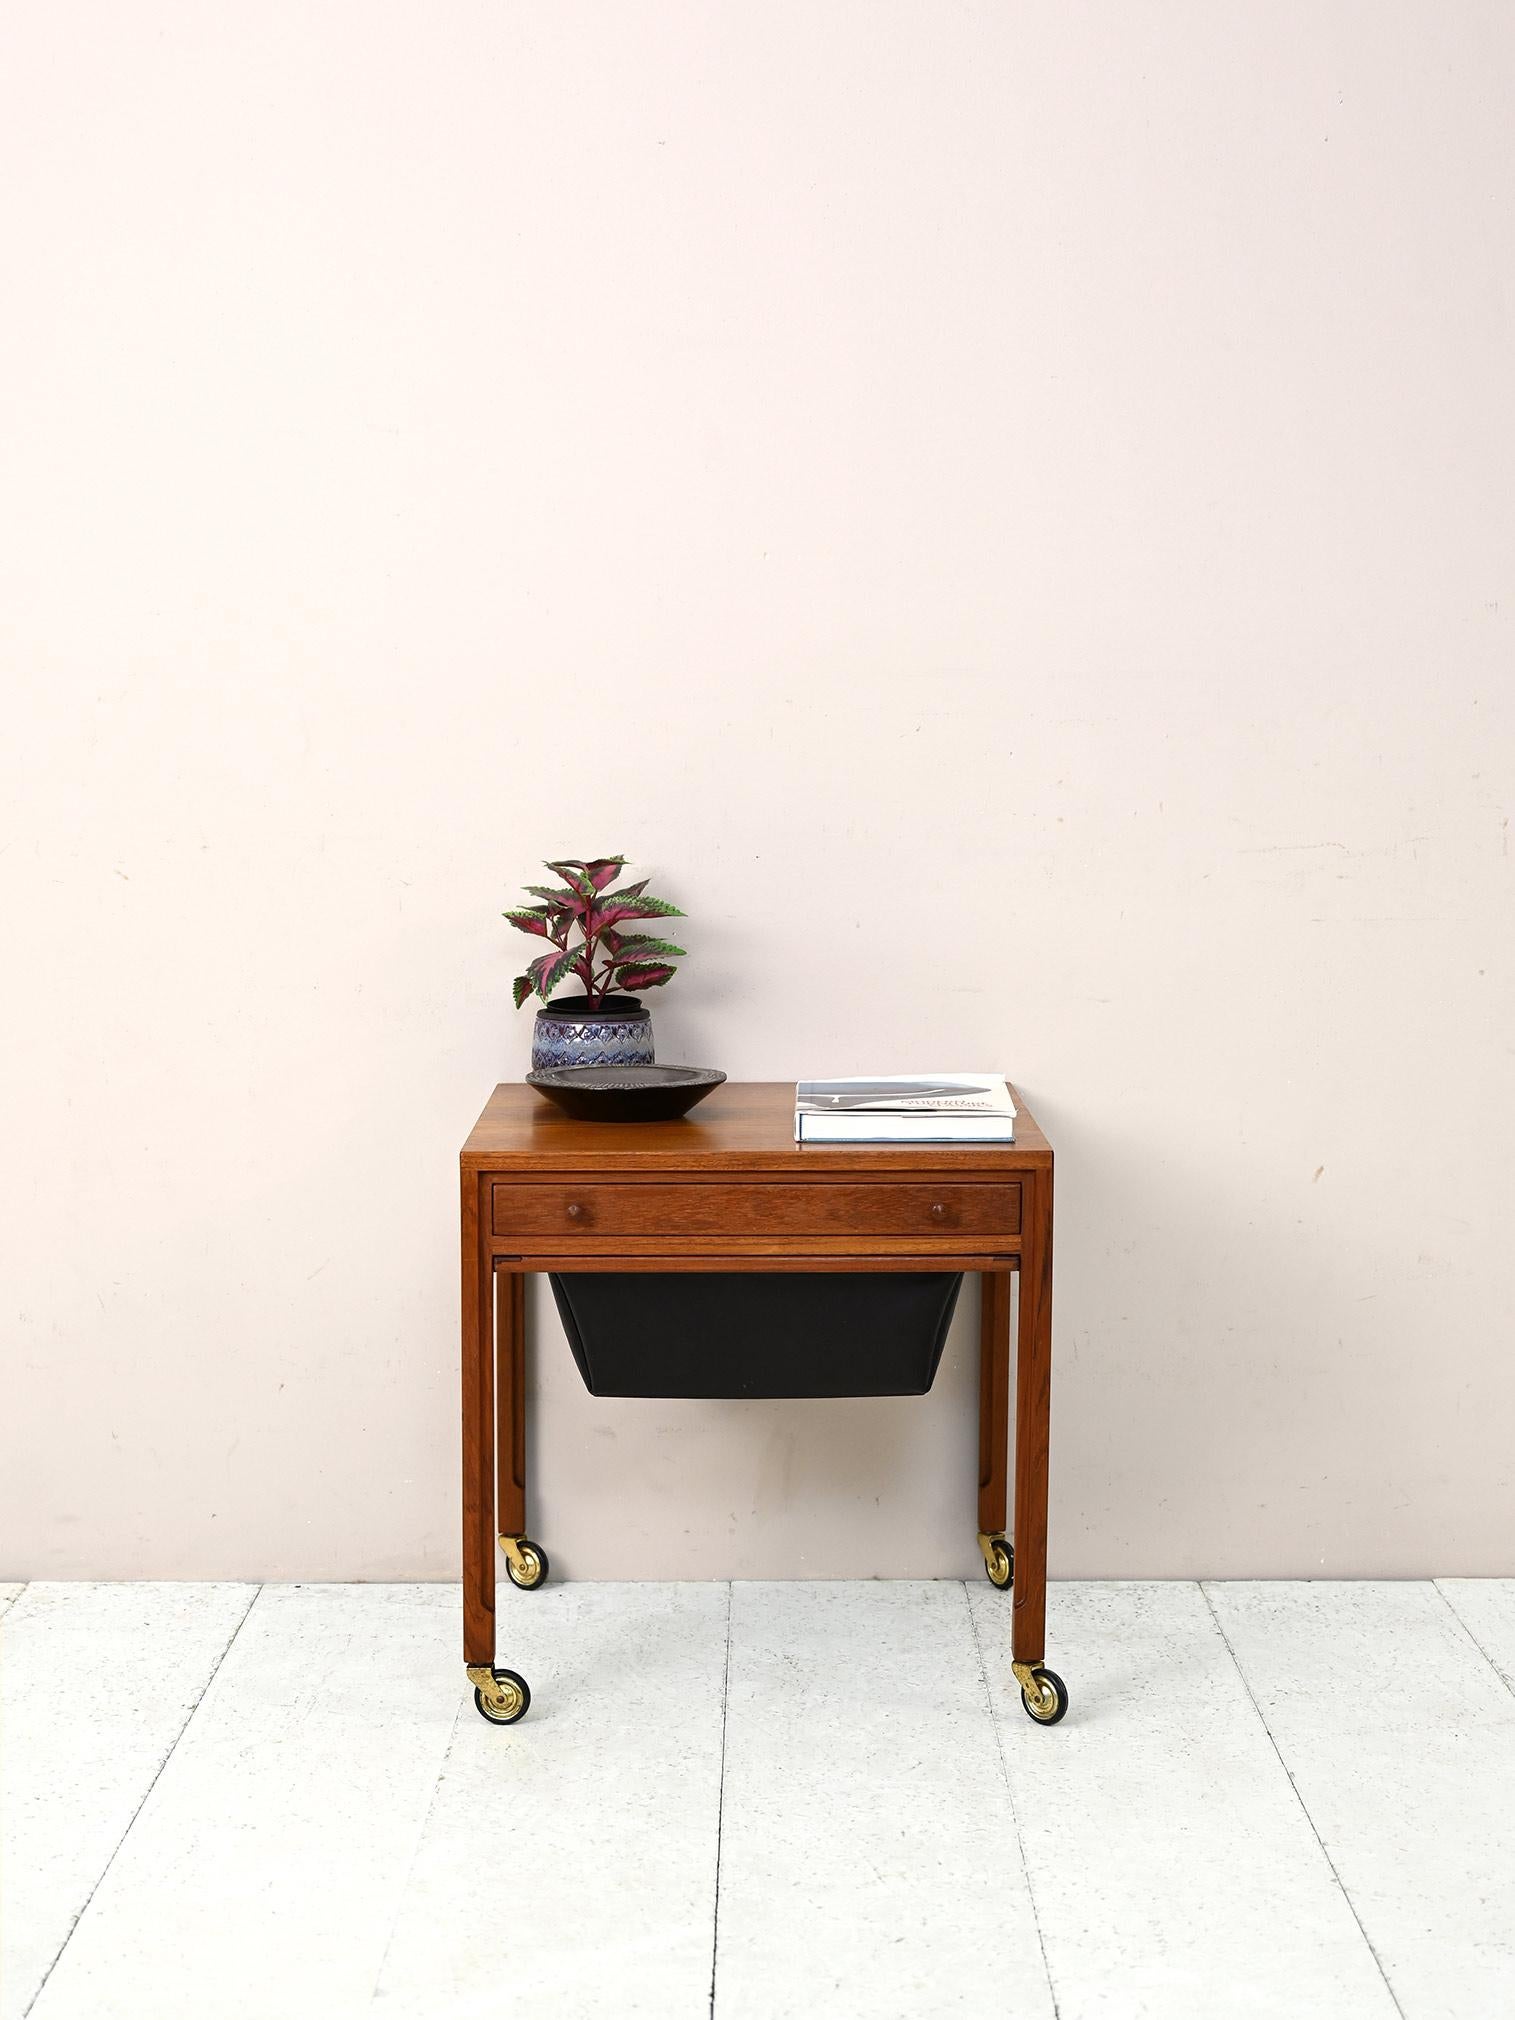 Chariot scandinave original avec tiroir et compartiment en similicuir noir.

Un meuble distinctif qui peut être utilisé comme table d'appoint pratique. Il y a un tiroir pratique et un compartiment de rangement. 
Parfait pour donner à la pièce un